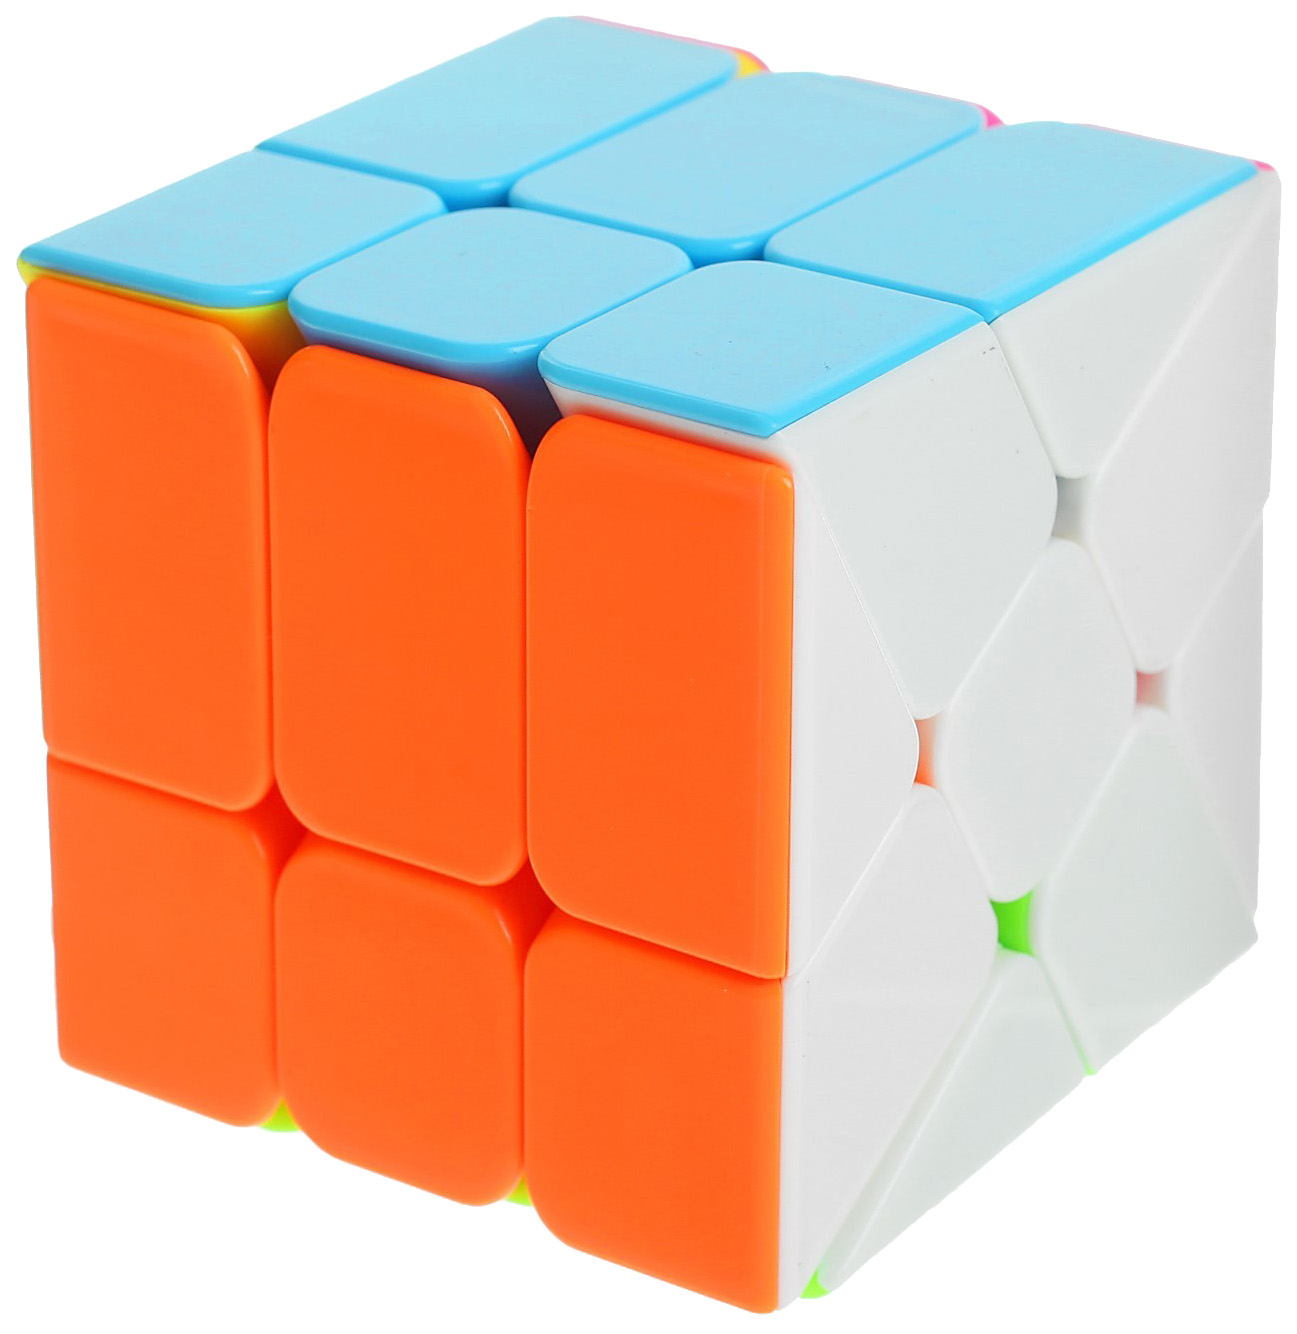 Головоломка Sima-Land Кубик 3021084 головоломка schreiber шрайбер кубик в инд картонной упаковке